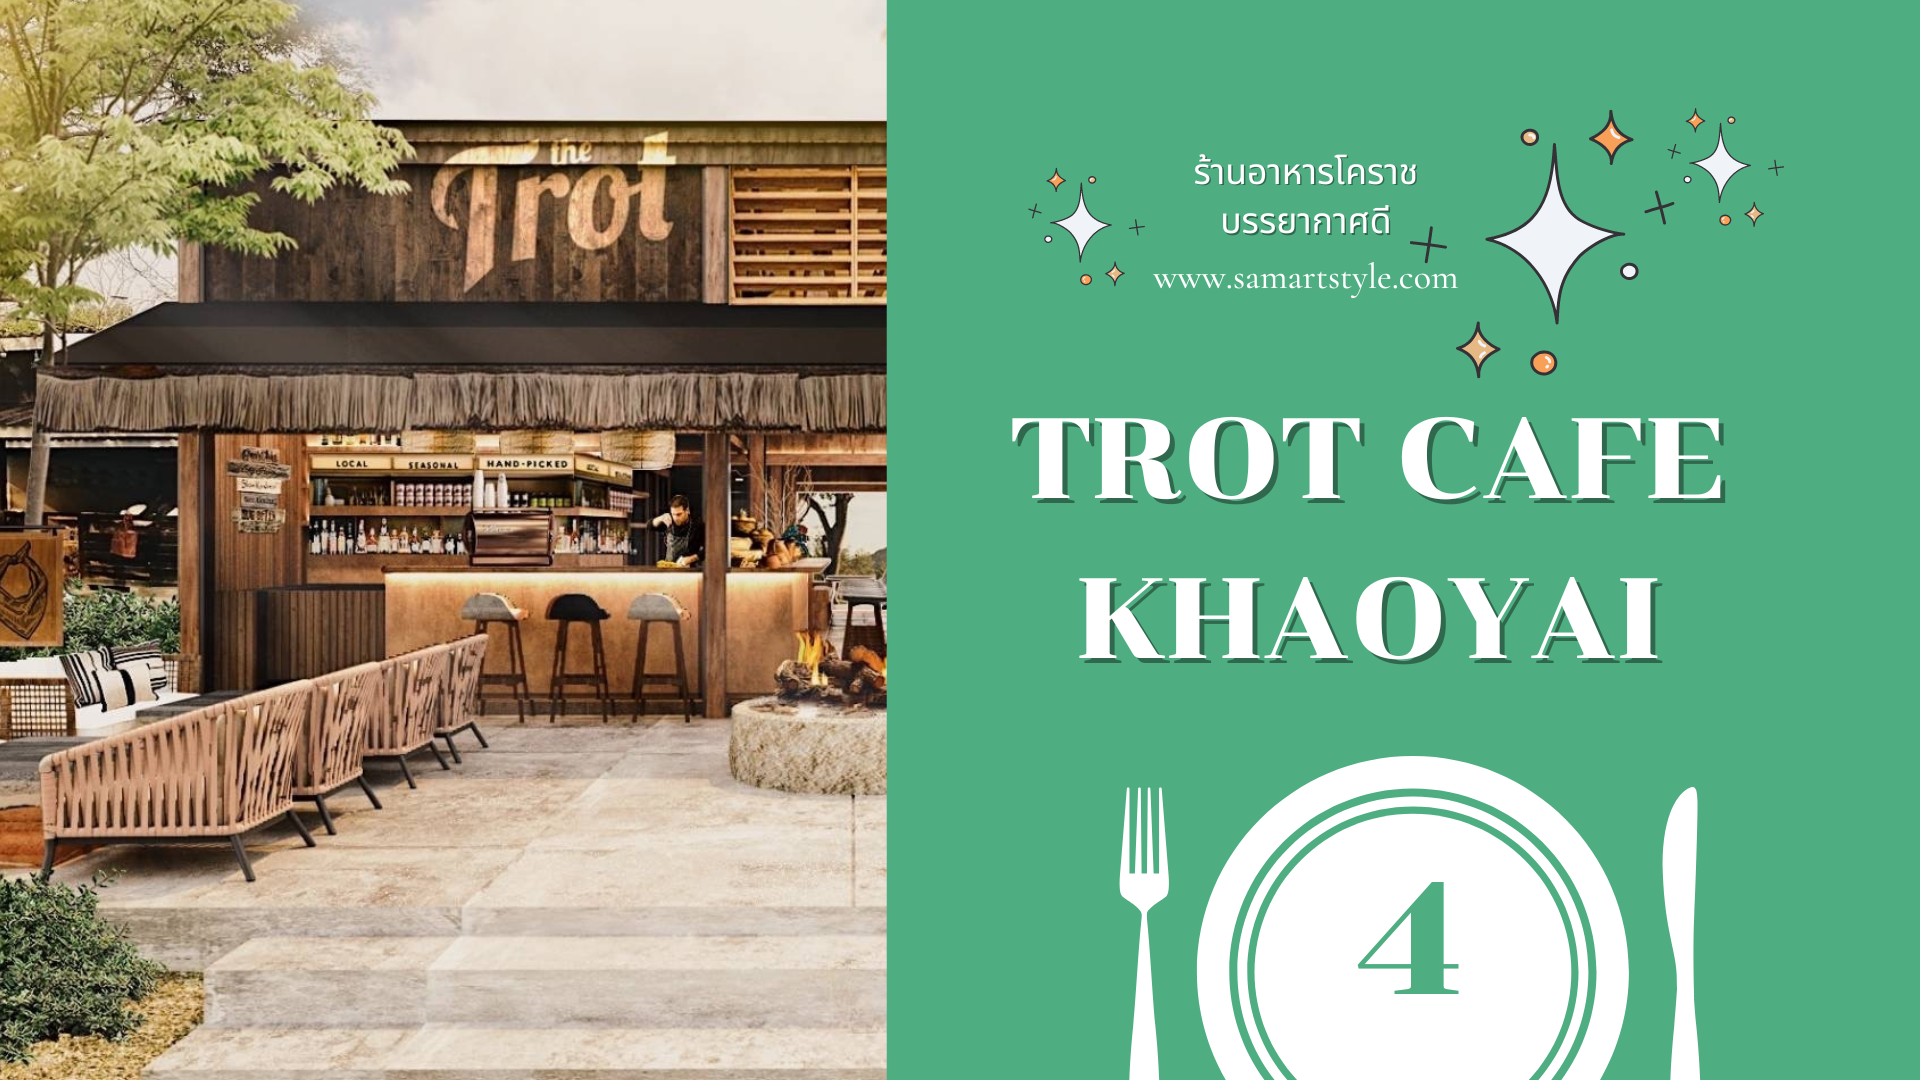 ร้านอาหารโคราช บรรยากาศดี ชื่อร้าน Trot Cafe Khaoyai